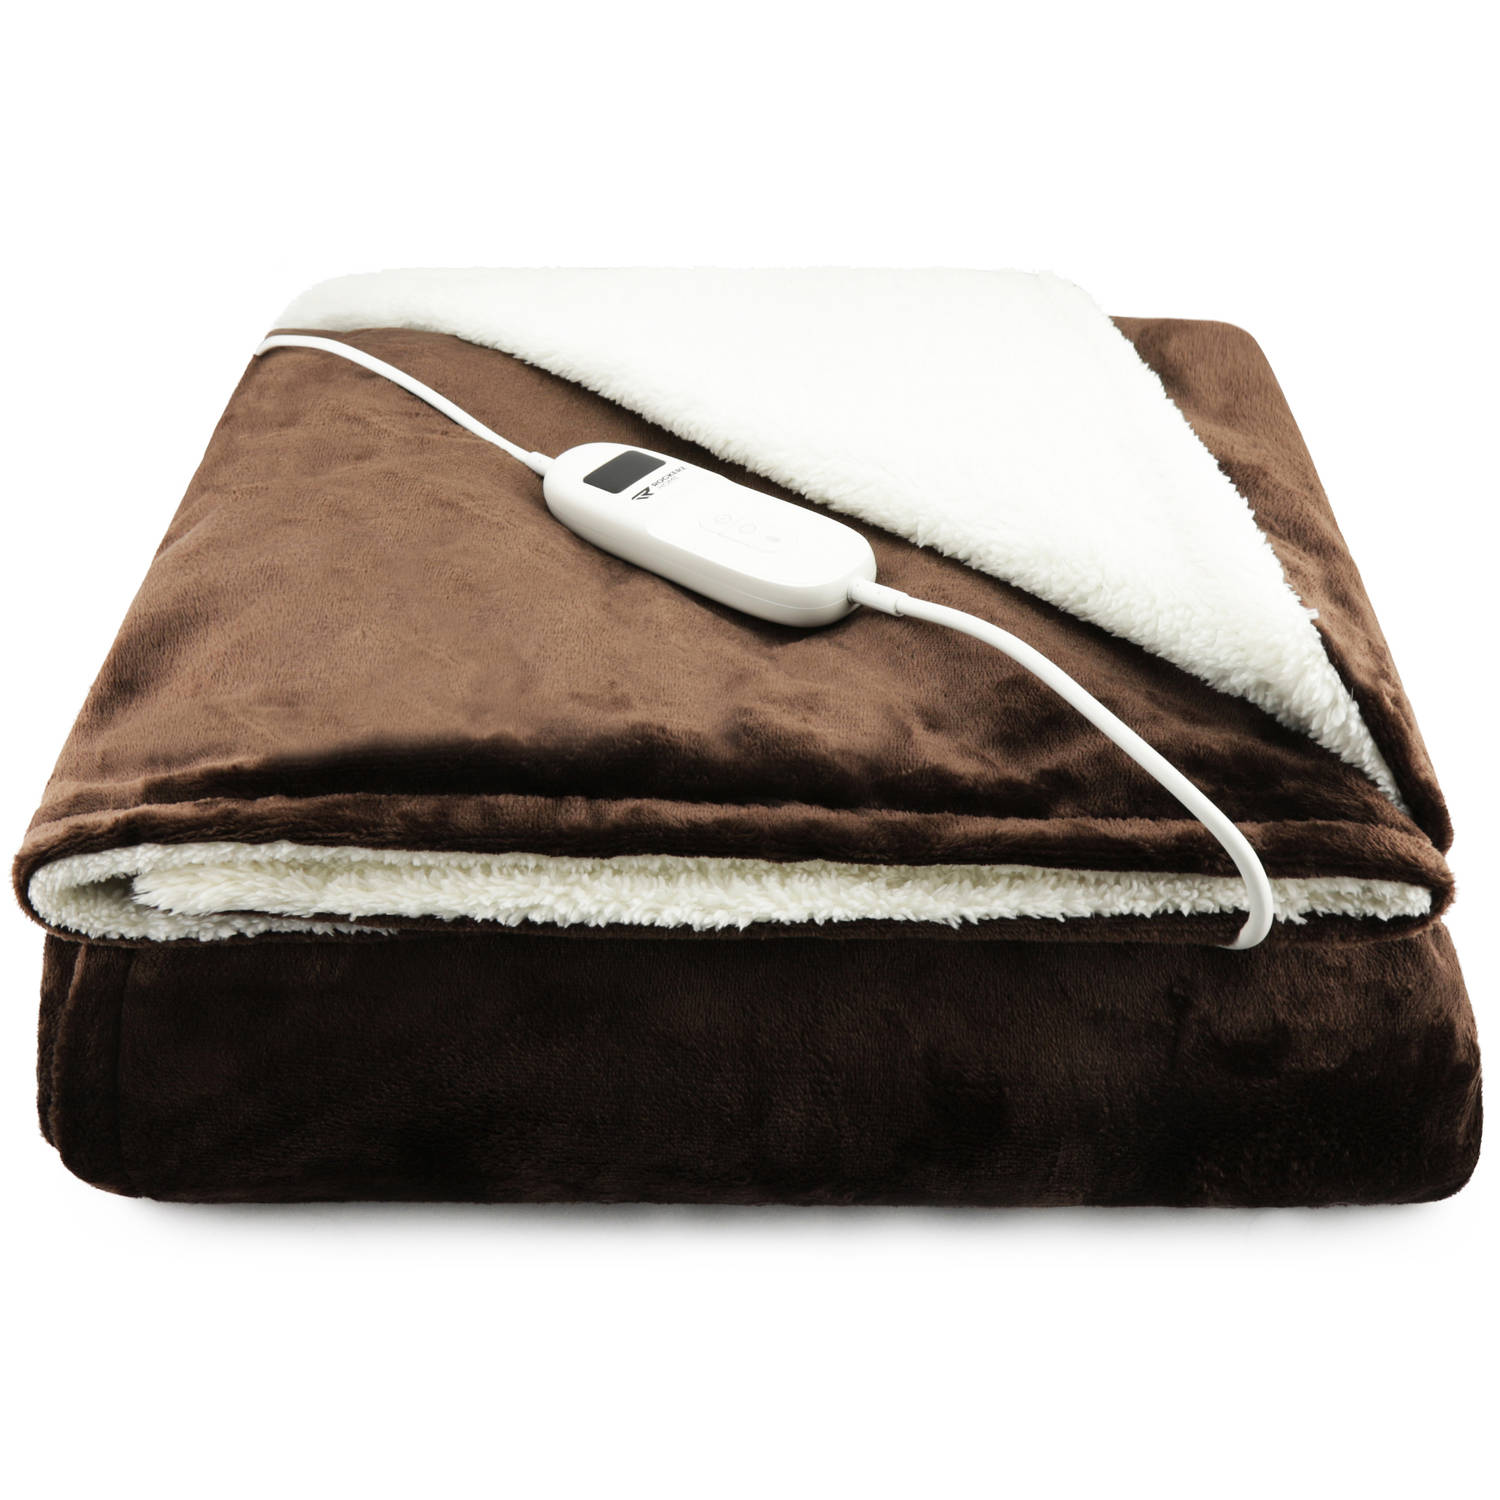 Elektrische deken - Afmetingen 200 x 180 cm - 9 warmtestanden - Automatische uitschakeling - XL snoer - Bruin